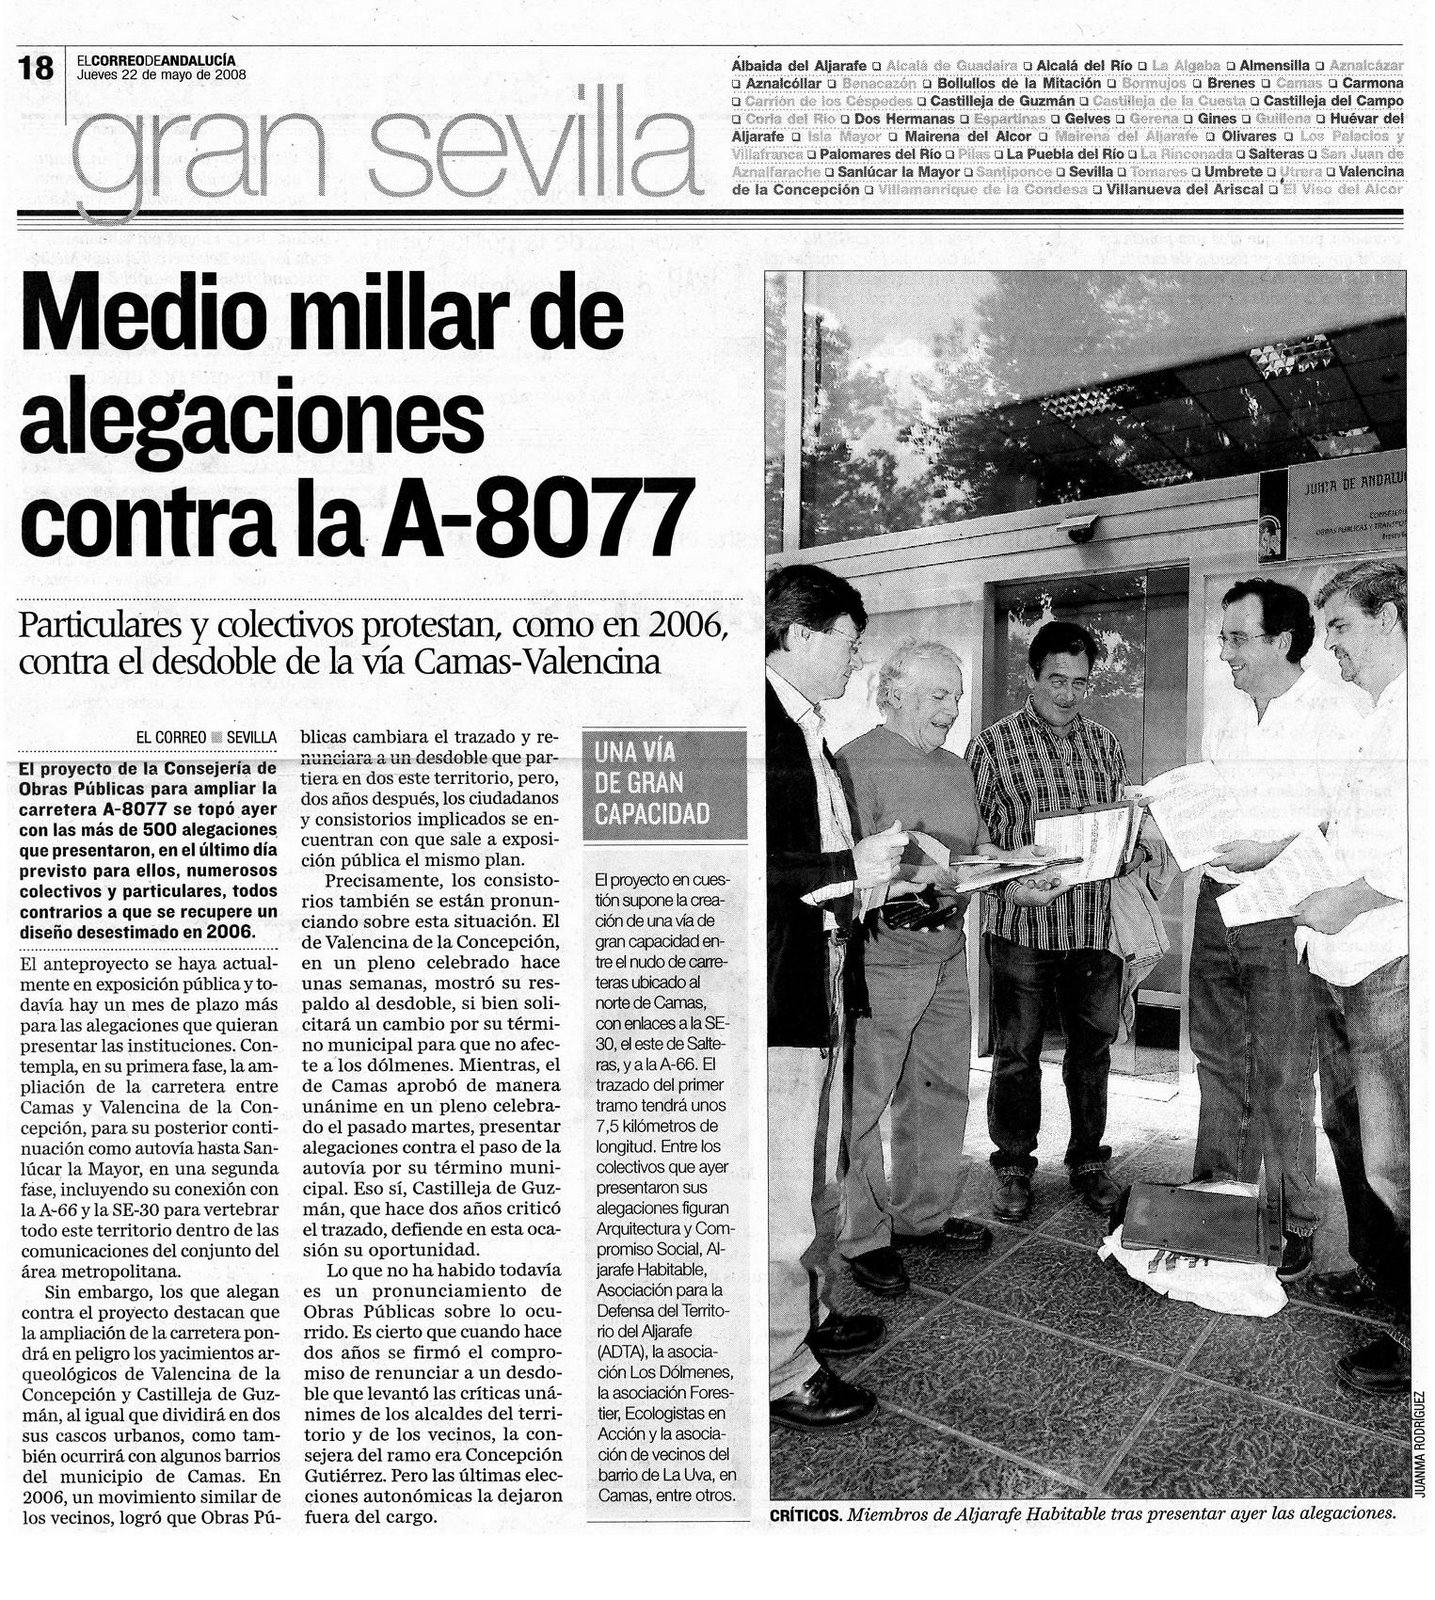 [2008+05+22+CORREO+ANDALUCÃ A+MEDIO+MILLAR+DE+ALEGACIONES+CONTRA+LA+A-80777.JPG]